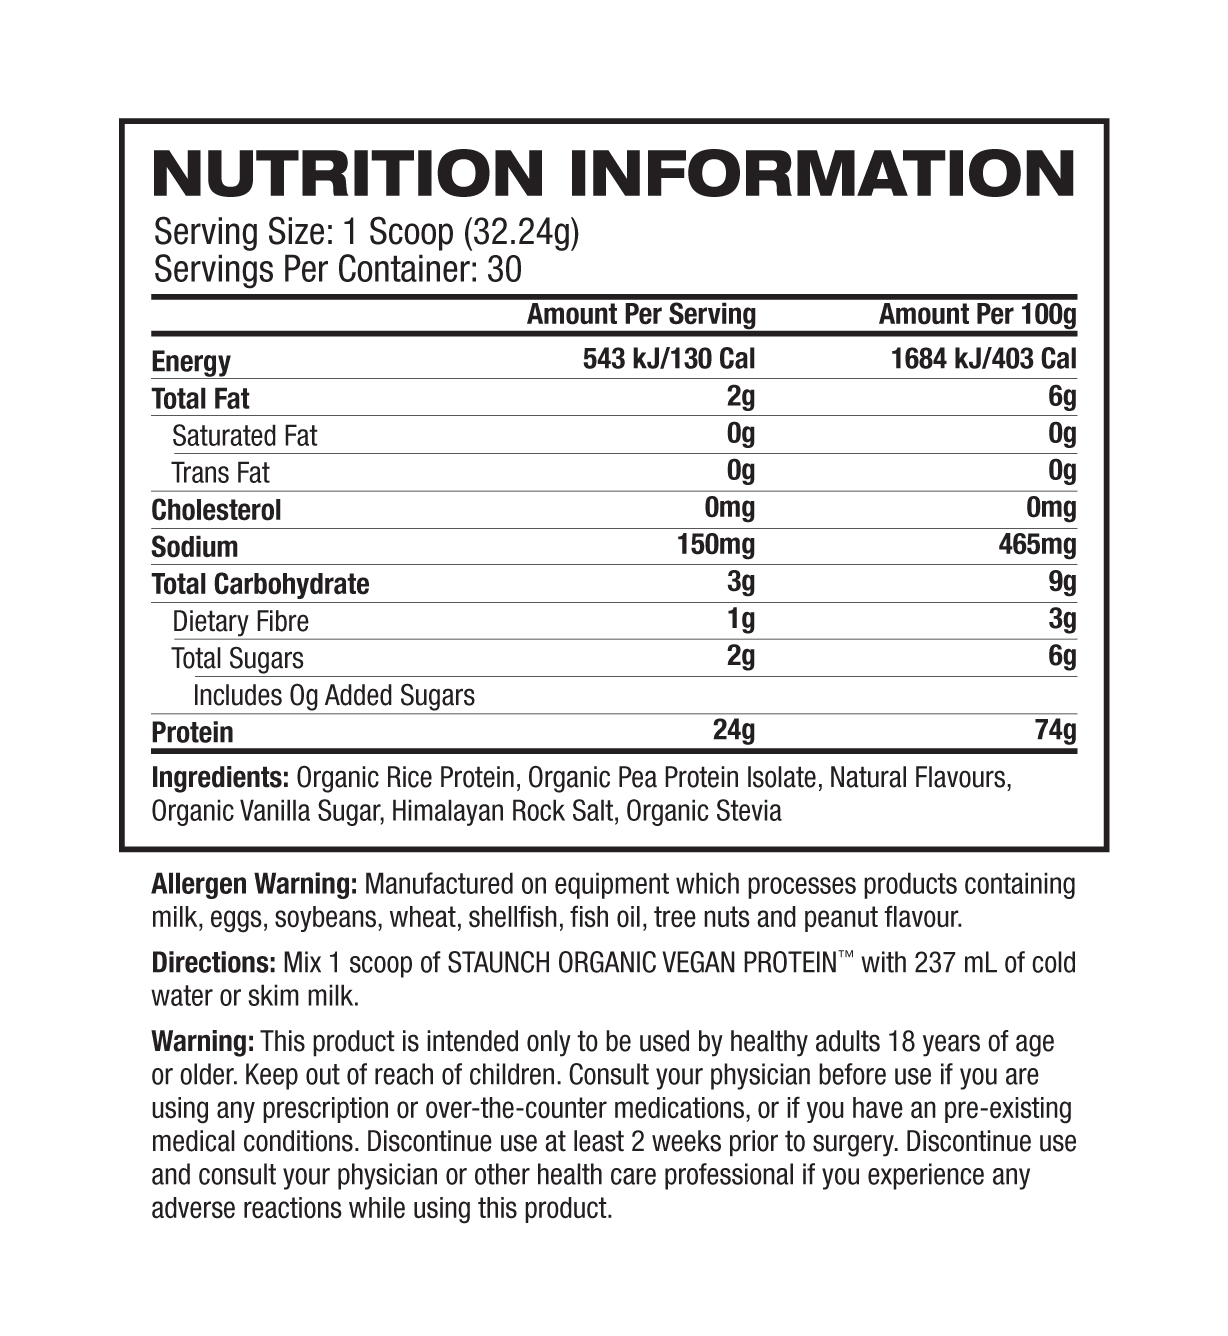 Staunch Nation Vegan Protein Nutrition